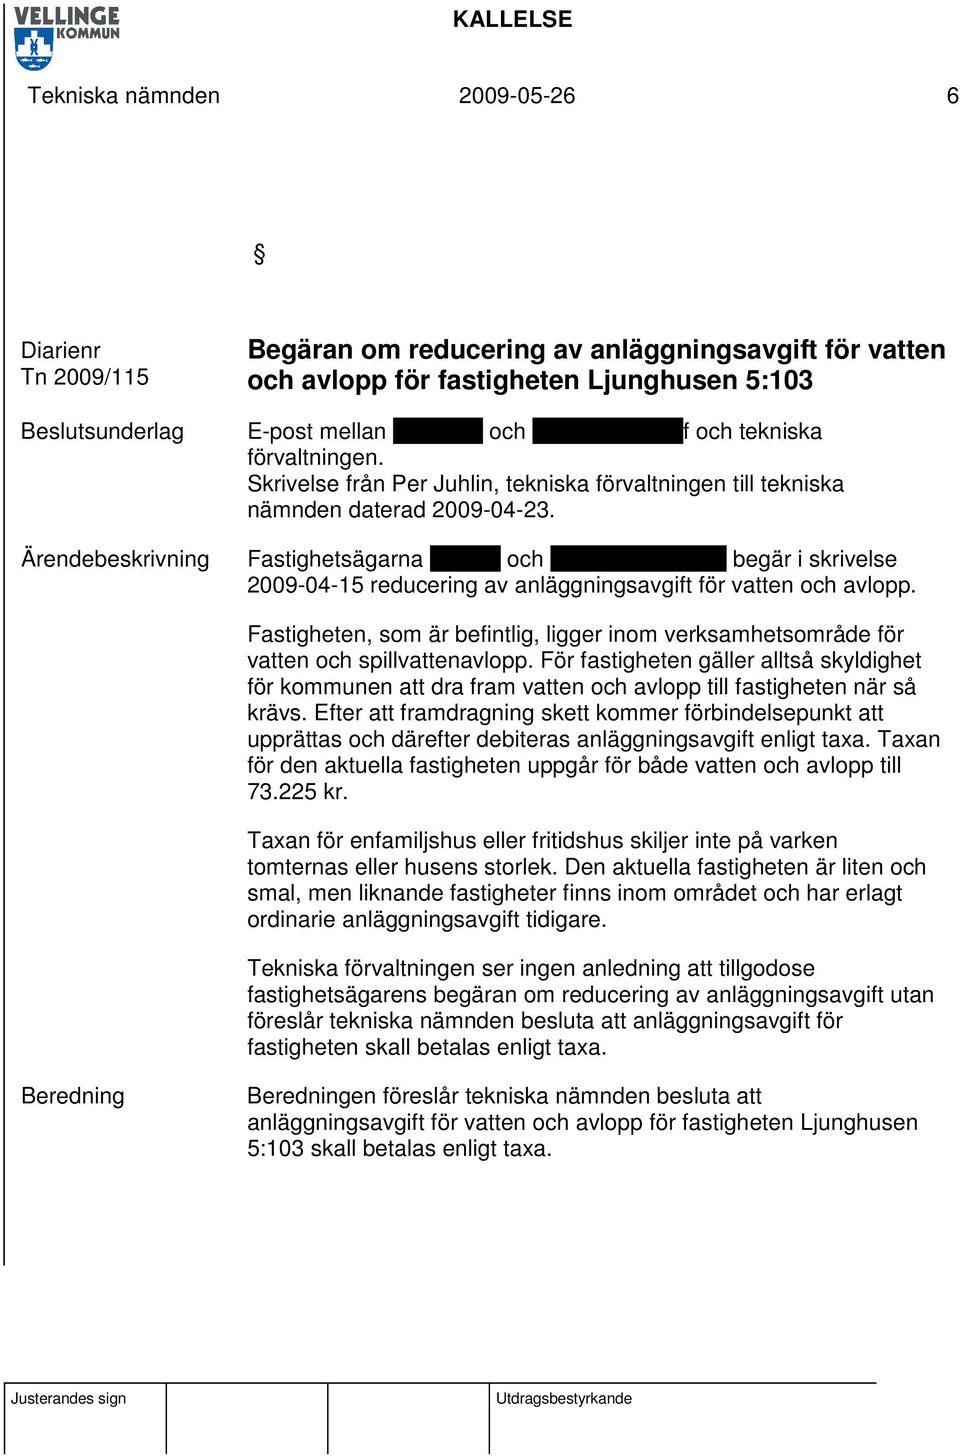 Fastighetsägarna Dennis och Christina Malmlöf begär i skrivelse 2009-04-15 reducering av anläggningsavgift för vatten och avlopp.